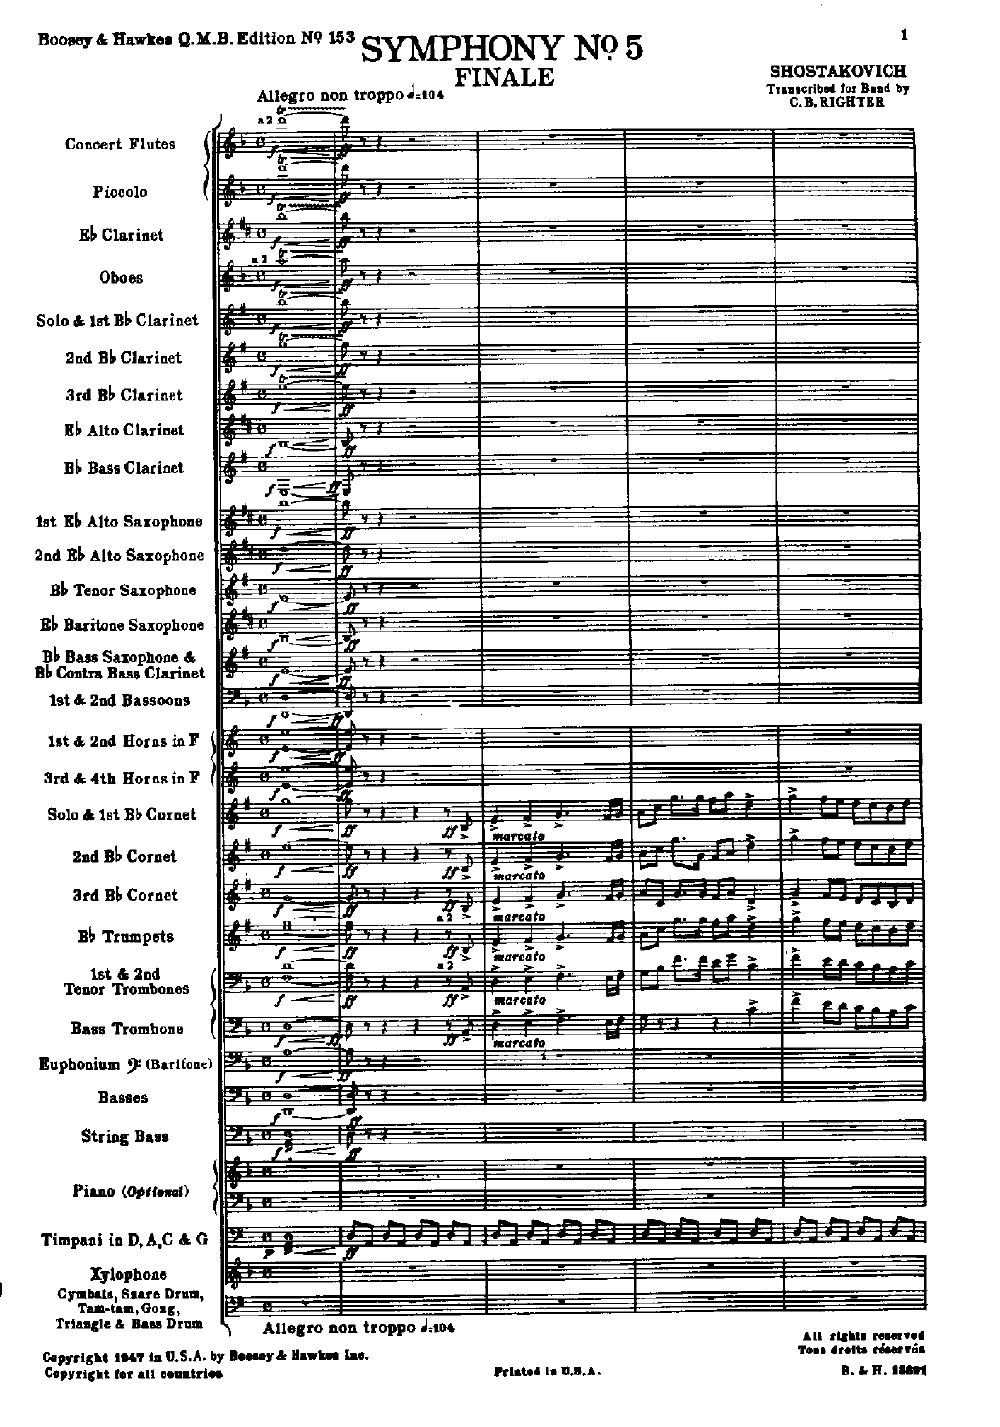 Shostakovich symphony 5 score pdf